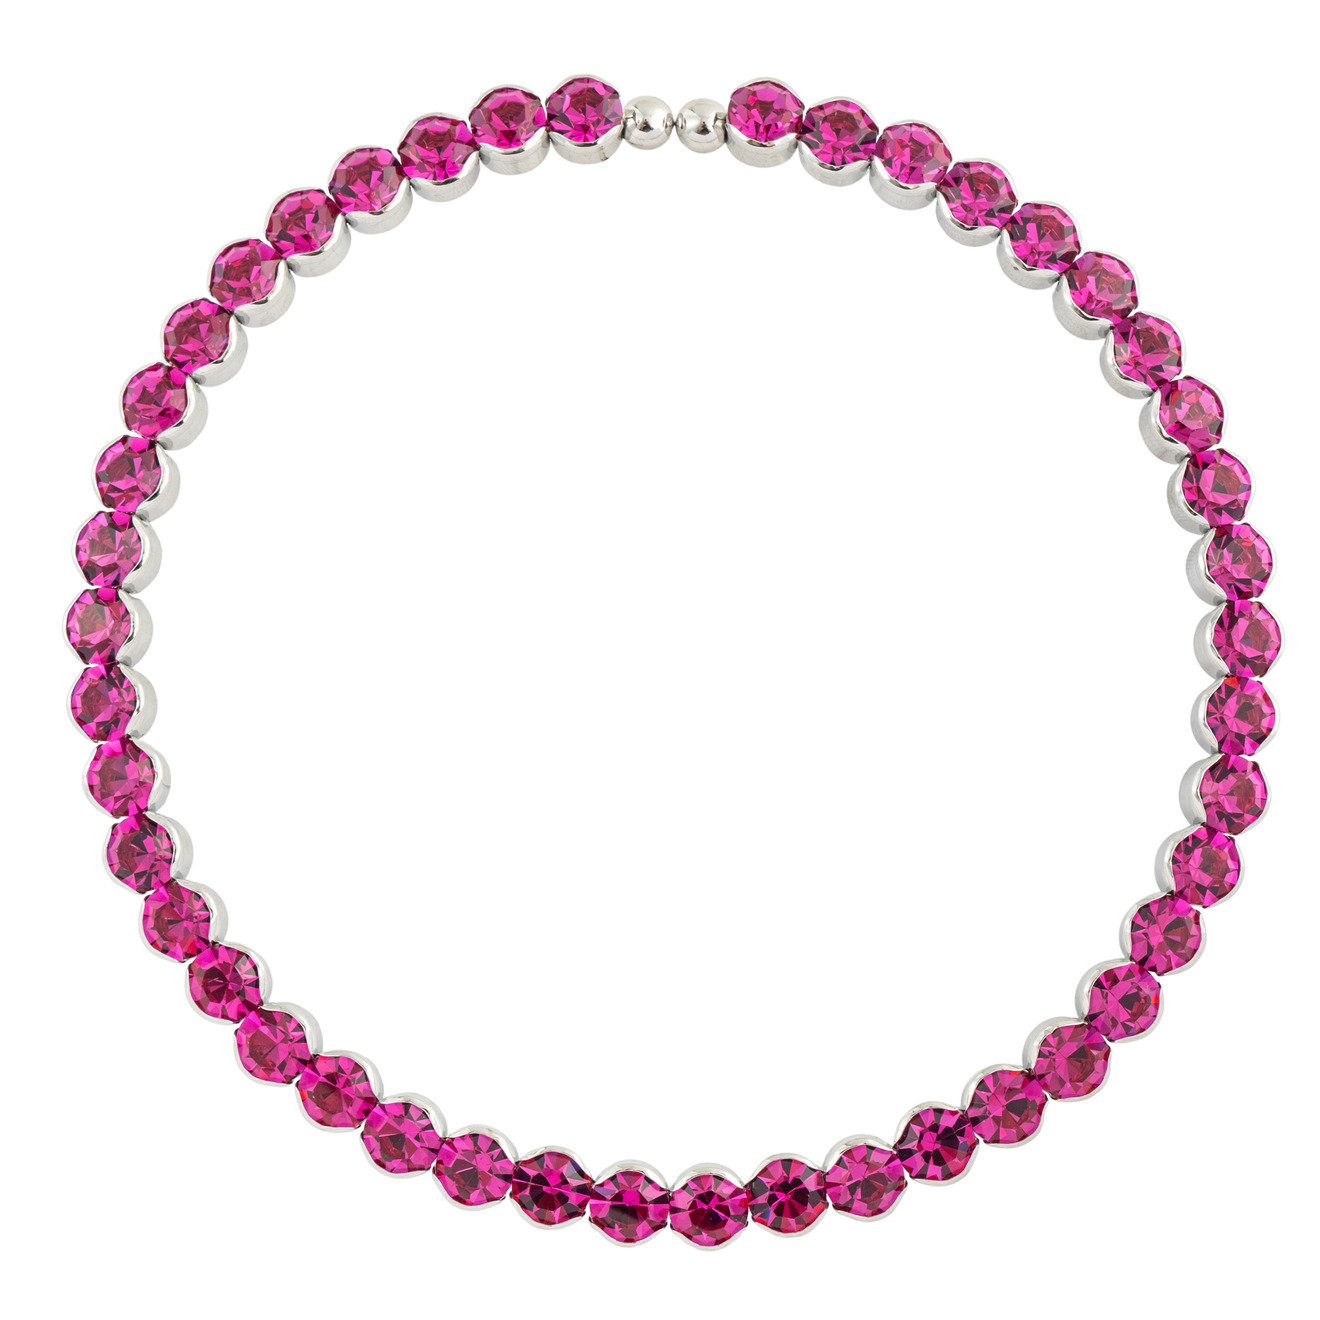 Herald Percy Ярко-розовый чокер с круглыми кристаллами